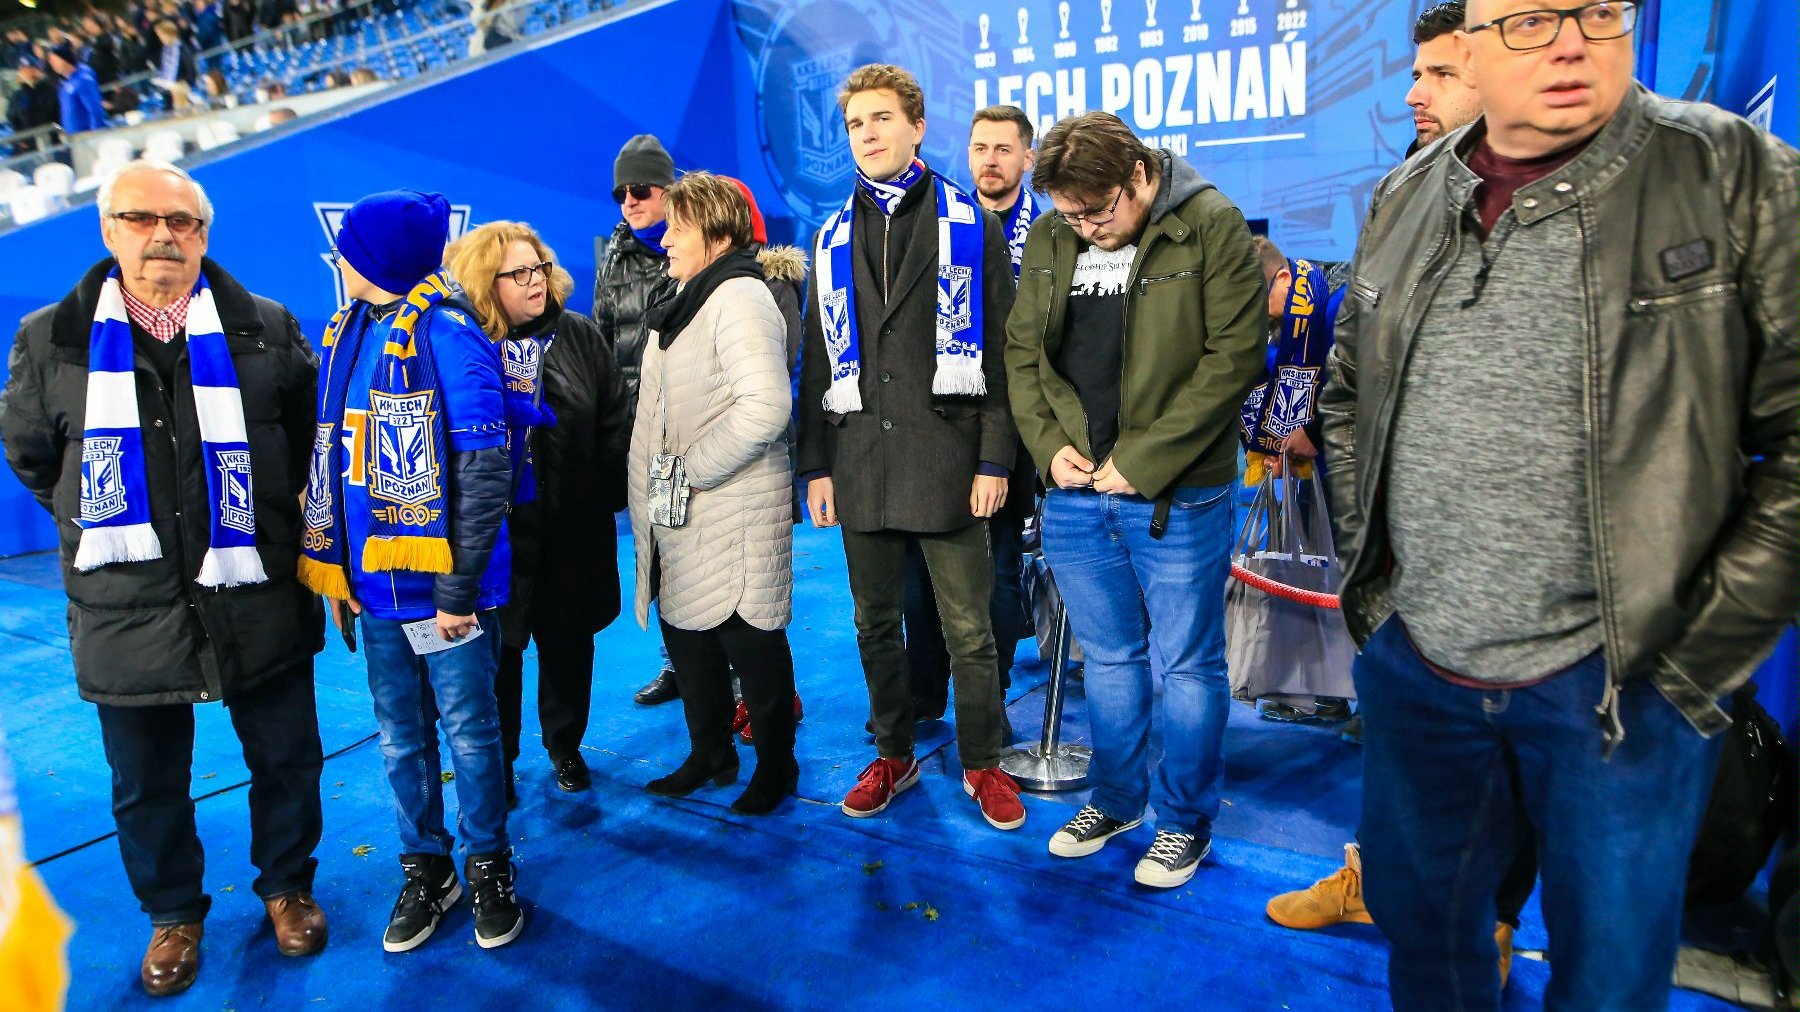 Laureaci konkursu "W górę serca" na stadionie Leche Poznań. Na zdjęciu jest kilkanaście osób odbierających dyplomy i nagrody. Wszyscy stoją na murawie i mają szaliki Kolejorza.